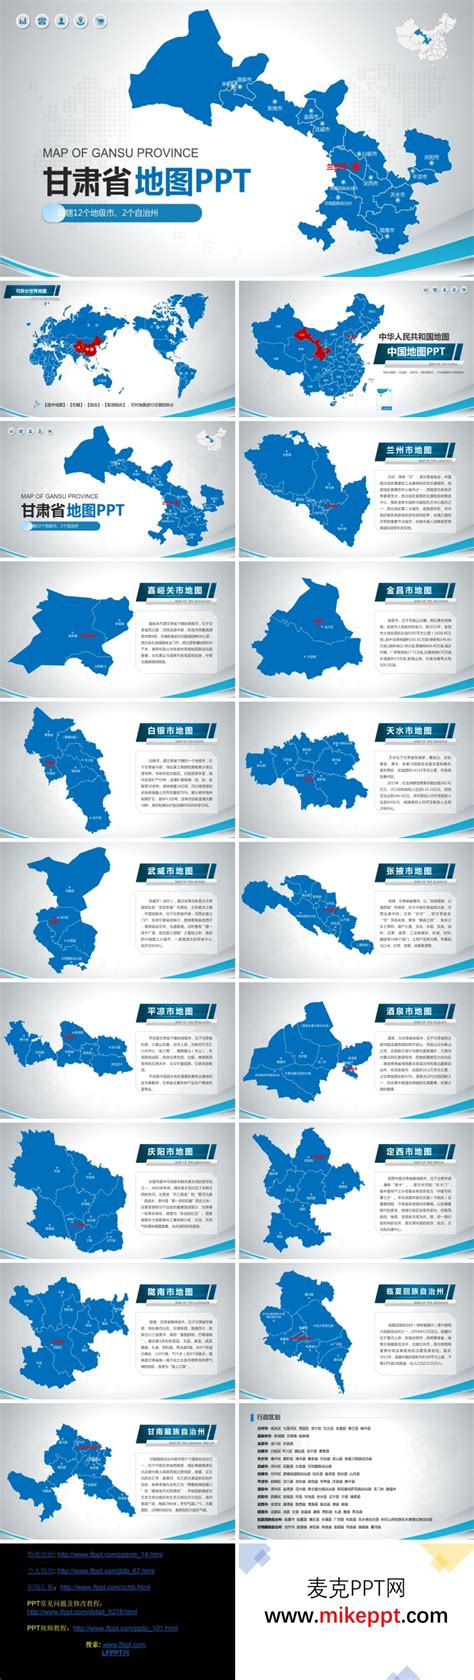 甘肃省地图PPT模板-麦克PPT网